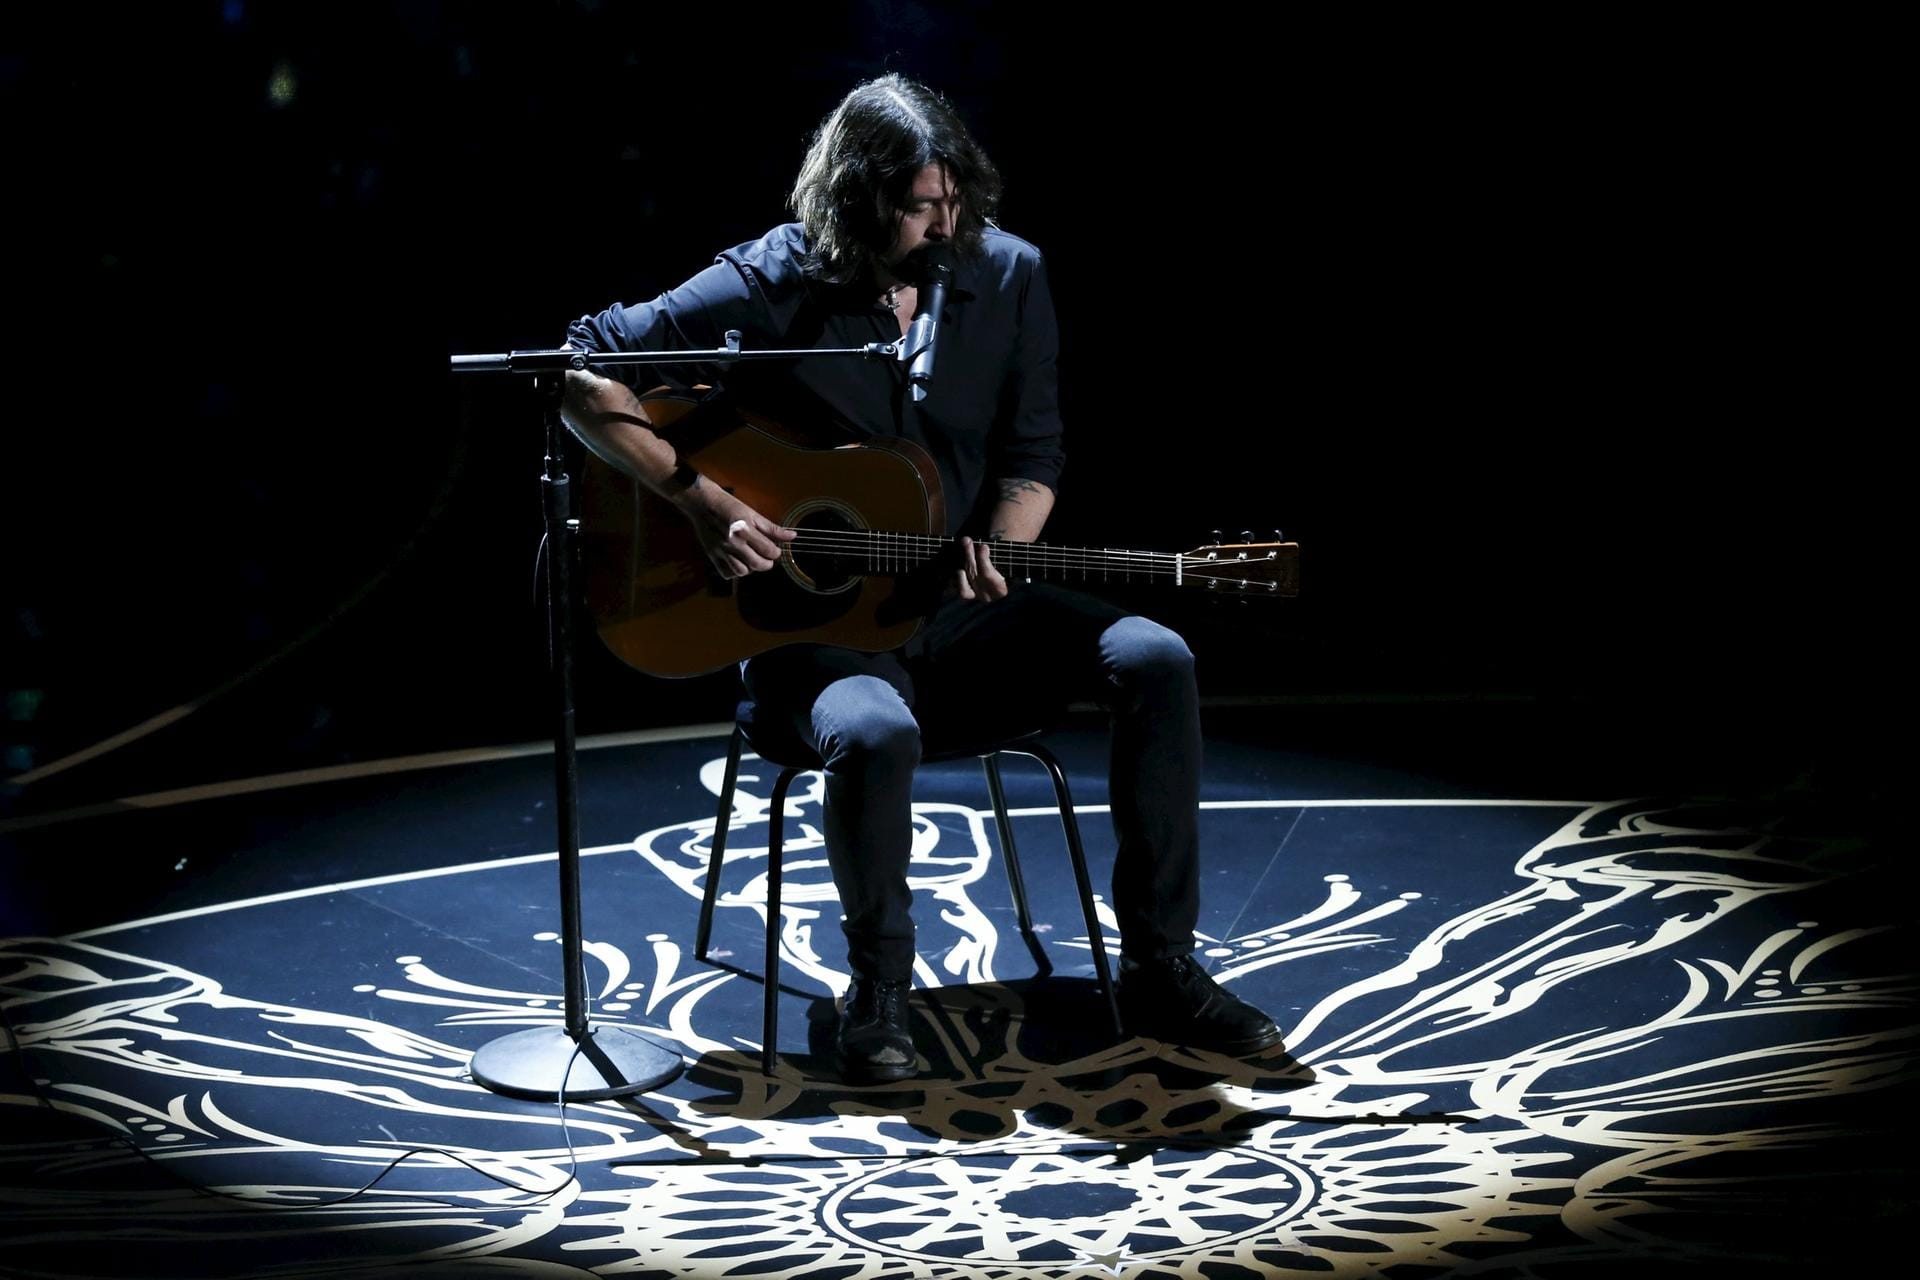 Rocksänger und Foo-Fighters-Frontmann David Grohl trägt den Beatles-Song "Blackbird" vor, während im Hintergrund die Diashow "In Memoriam" die Verstorbenen ehrt.